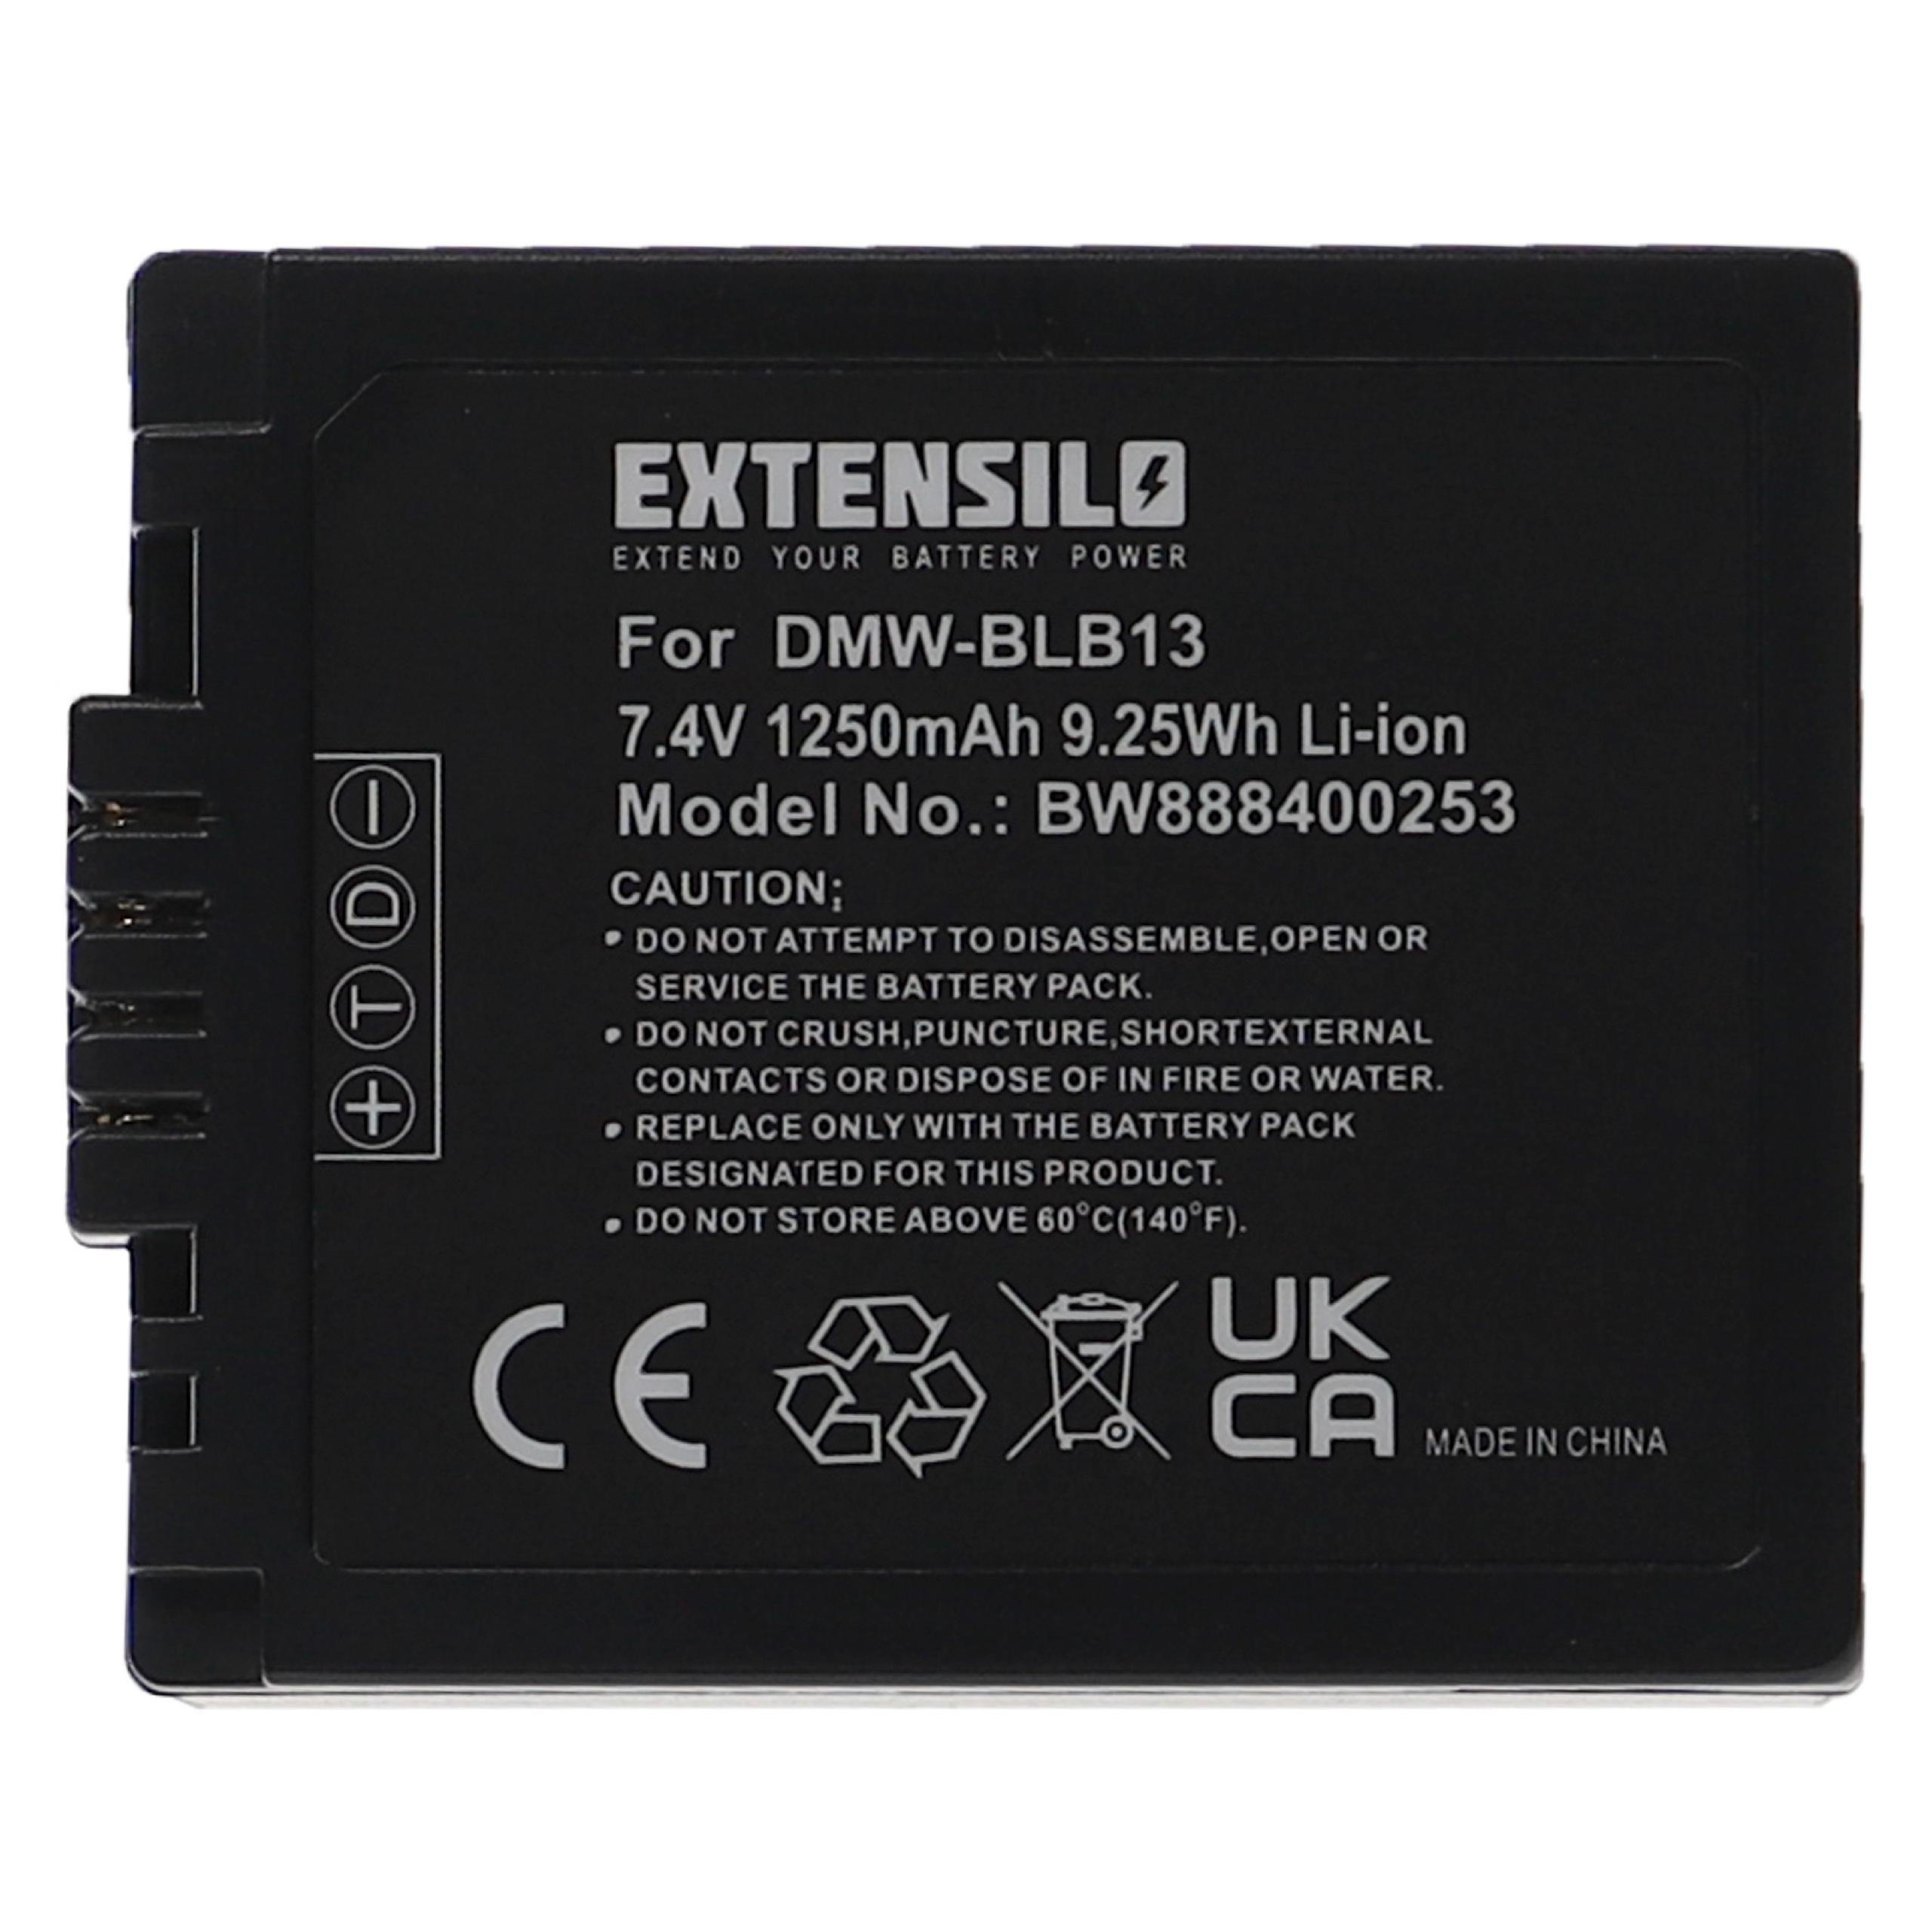 Batterie remplace Panasonic DMW-BLB13, DMW-BLB13E, DMW-BLB13GK pour appareil photo - 1250mAh 7,4V Li-ion